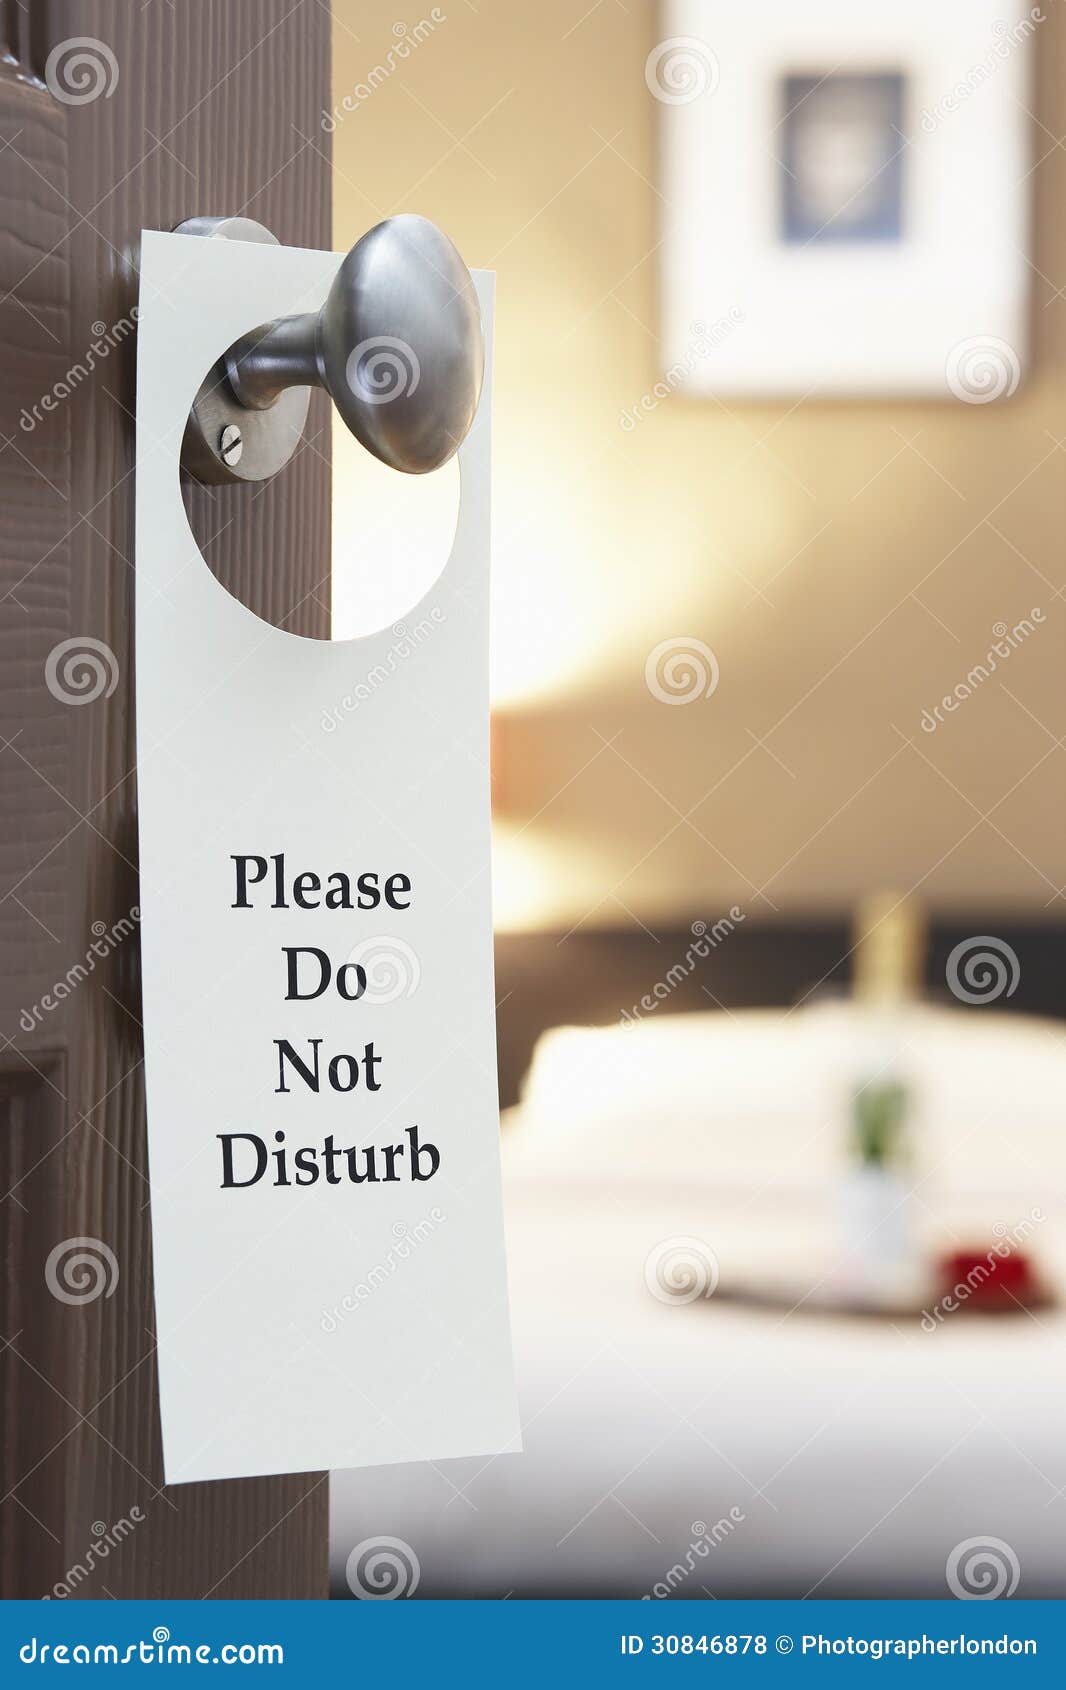 do not disturb sign on hotel room's door